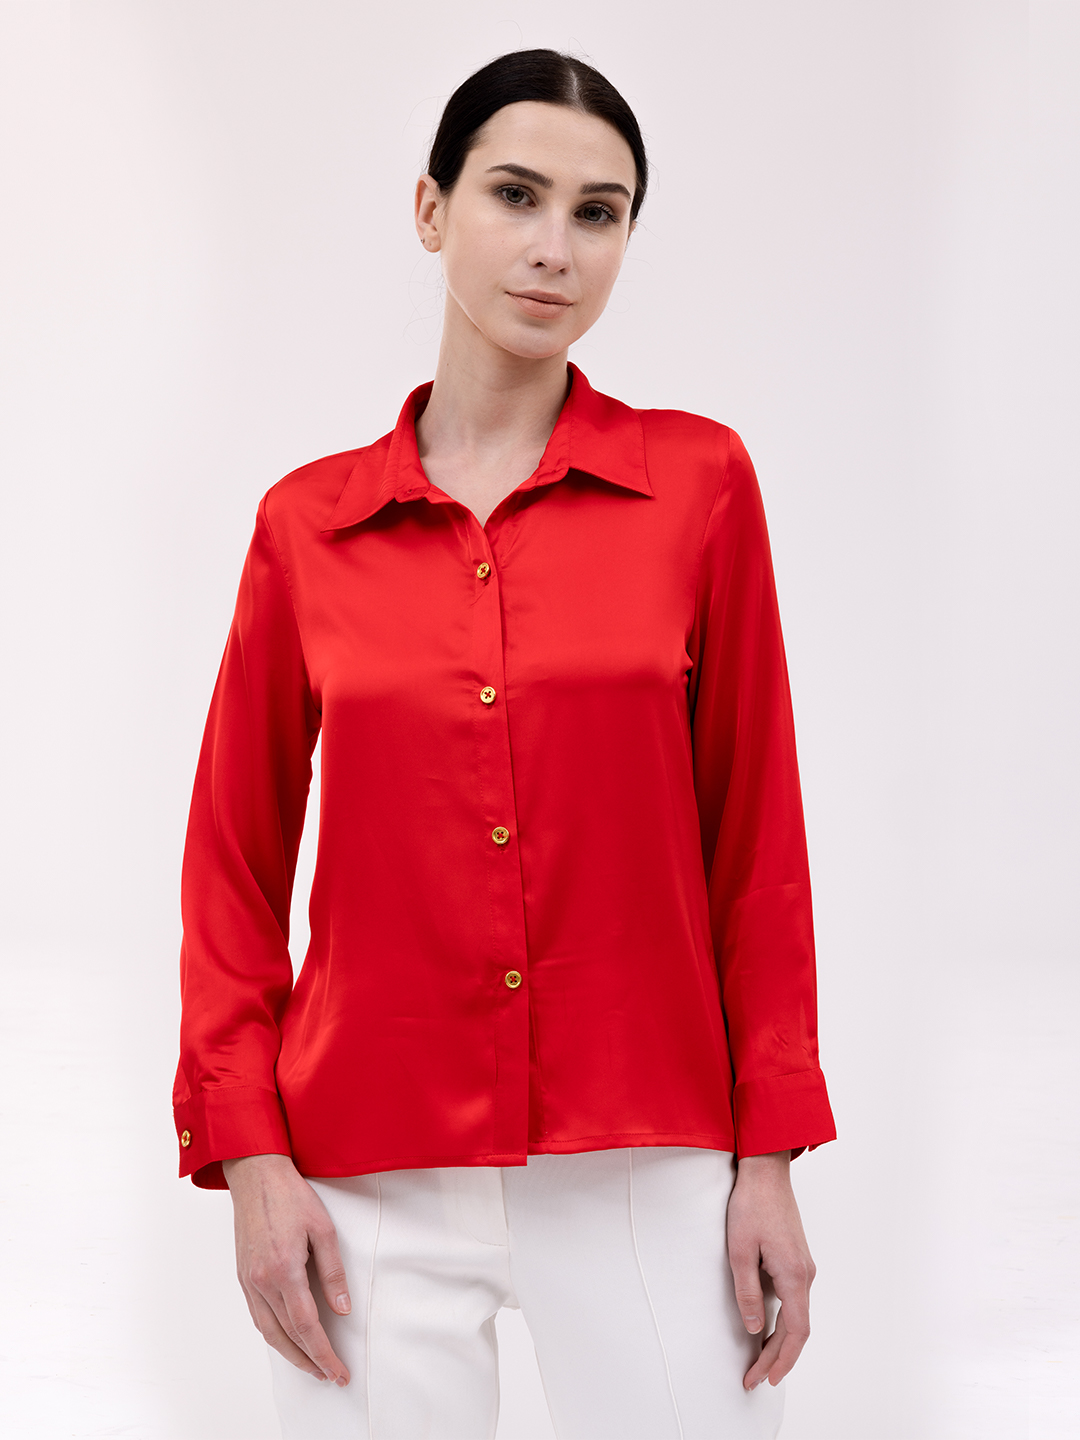 Red 9-5 Sleek Shirt - Front